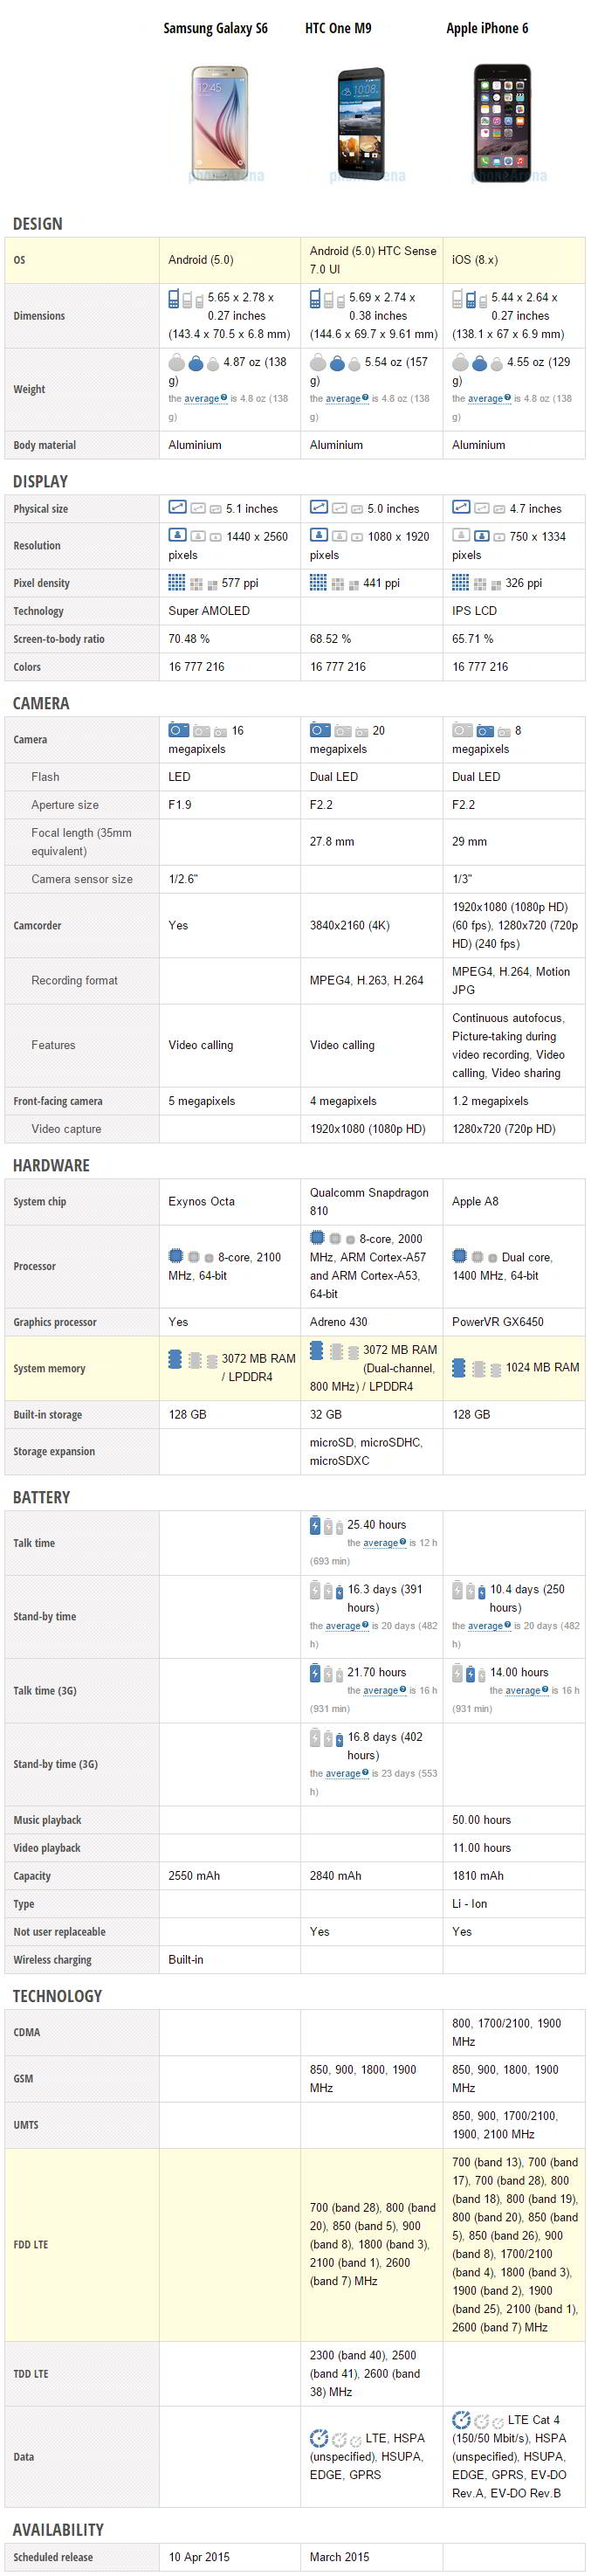 Confronto delle specifiche di Samsung Galaxy S6, HTC One M9 e Apple iPhone 6